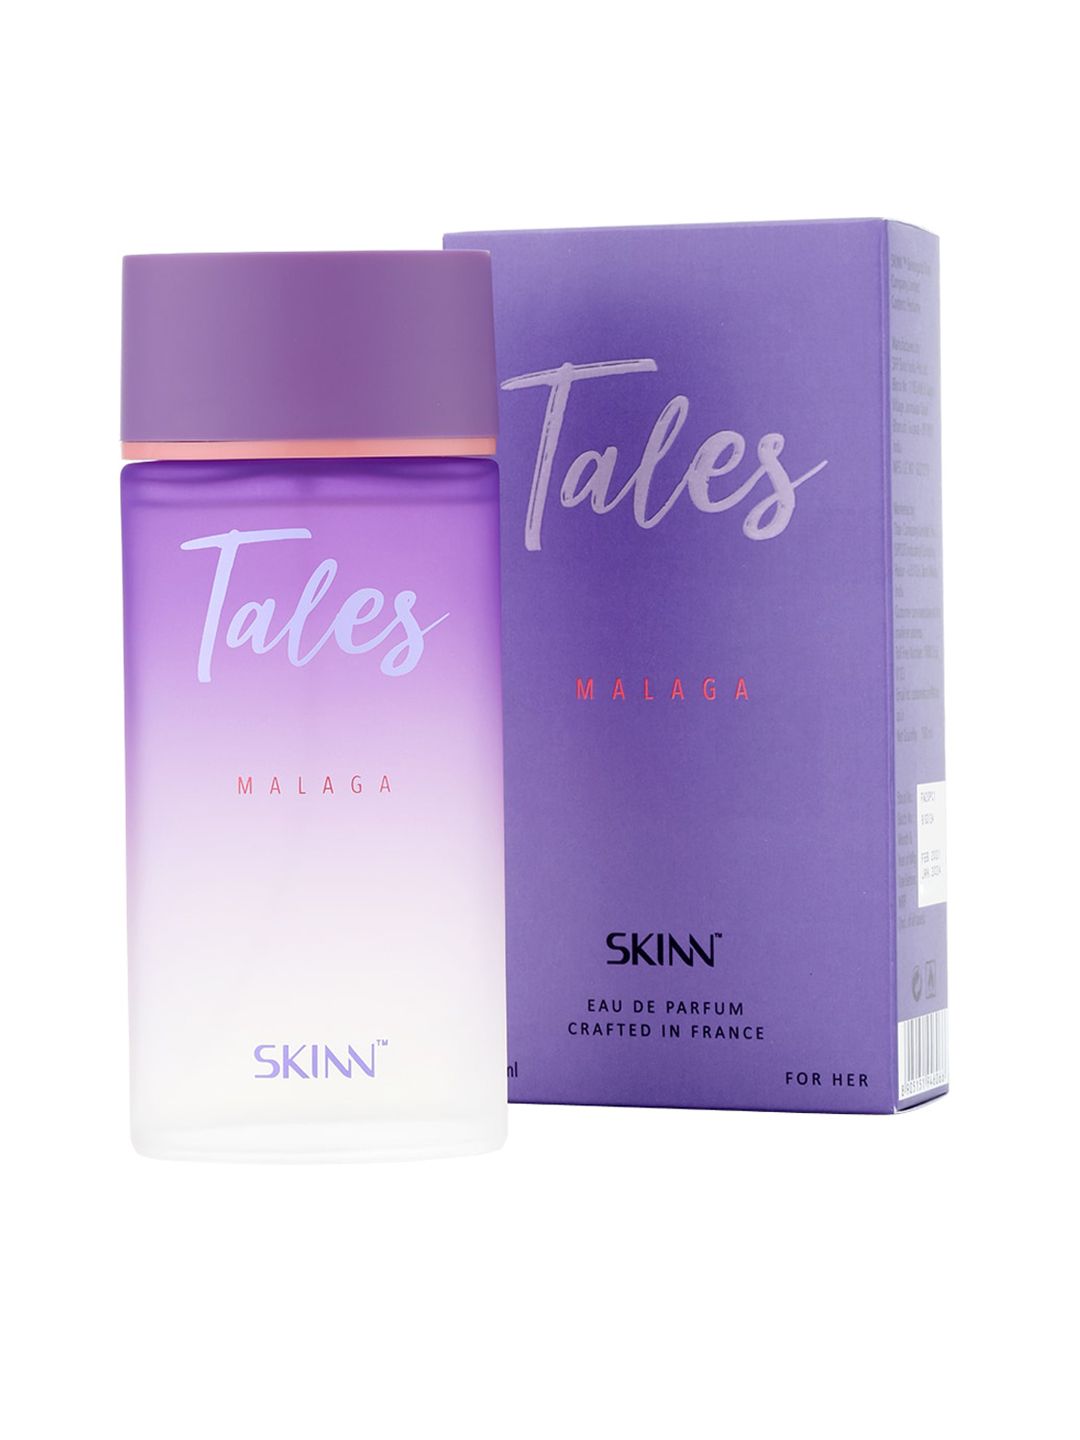 SKINN Women Tales Malaga Perfume 100 ml Price in India